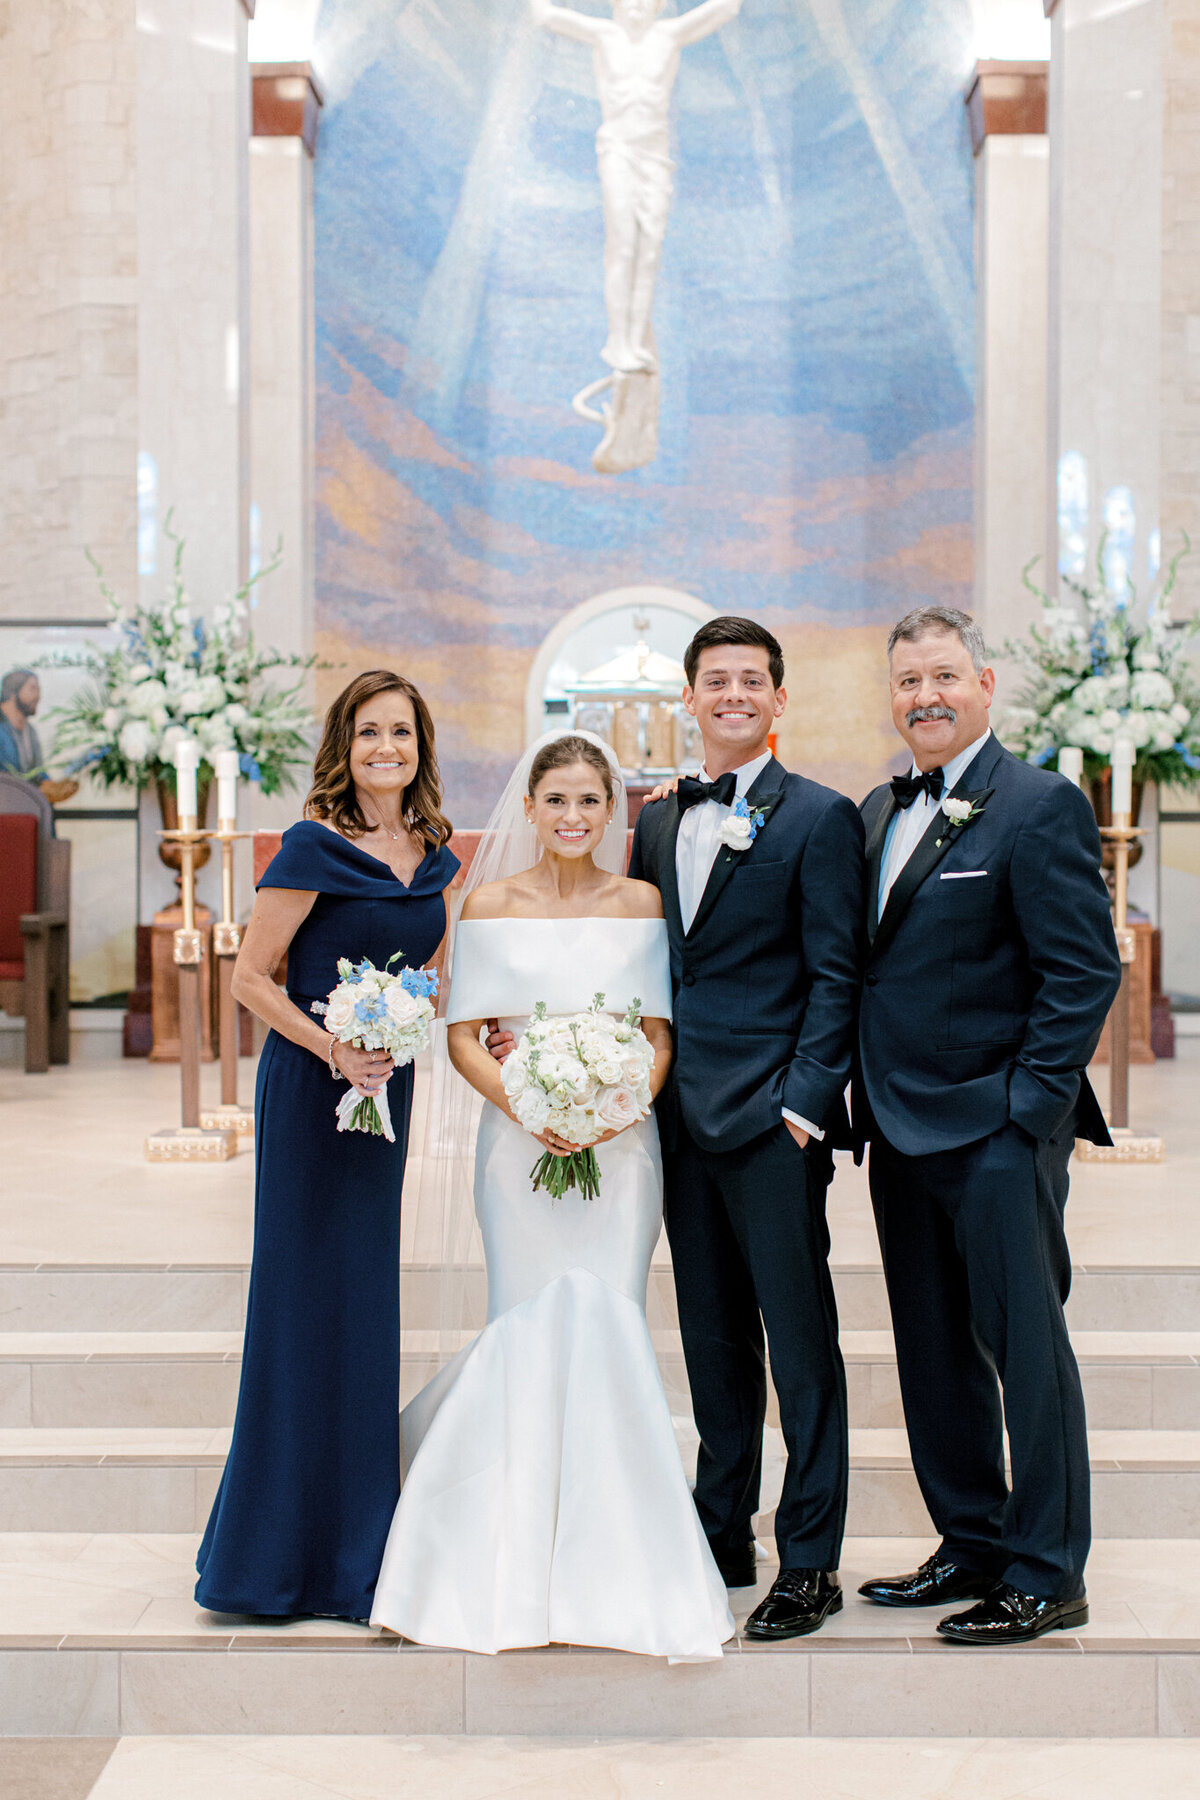 Annie & Logan's Wedding | Dallas Wedding Photographer | Sami Kathryn Photography-117